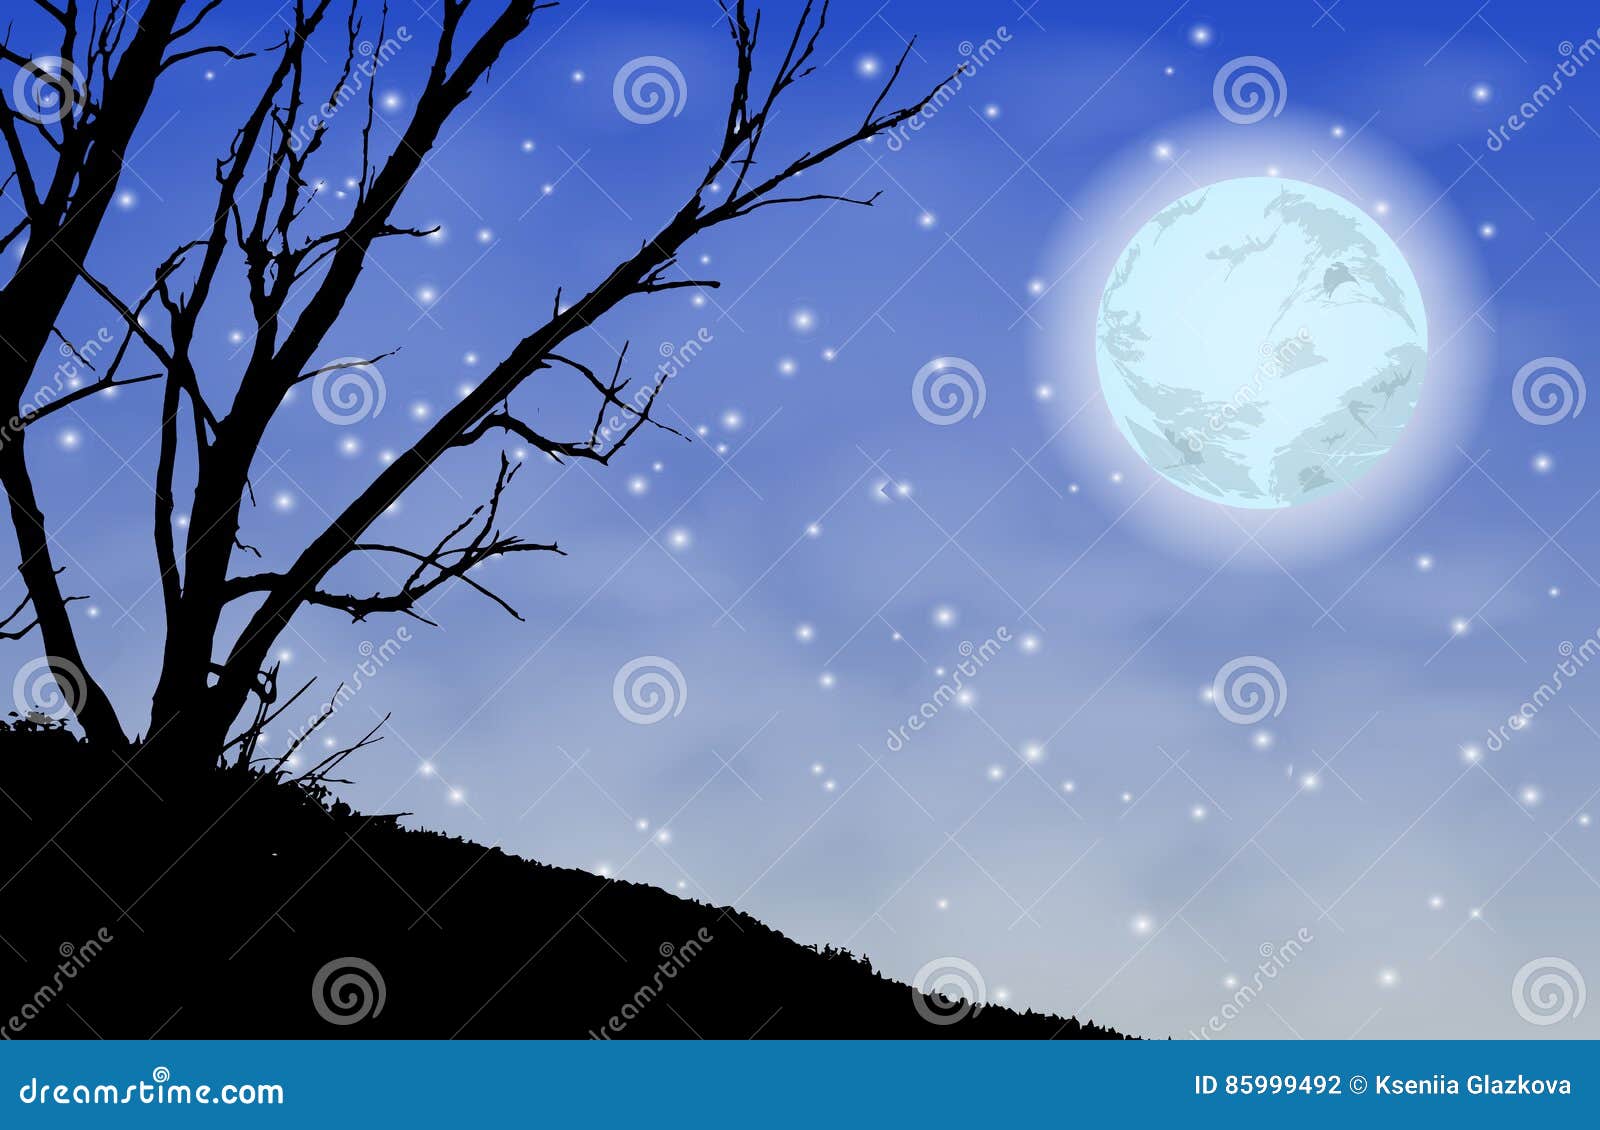 Trees Silhouette Night Moon. Illustration Stock Illustration ...